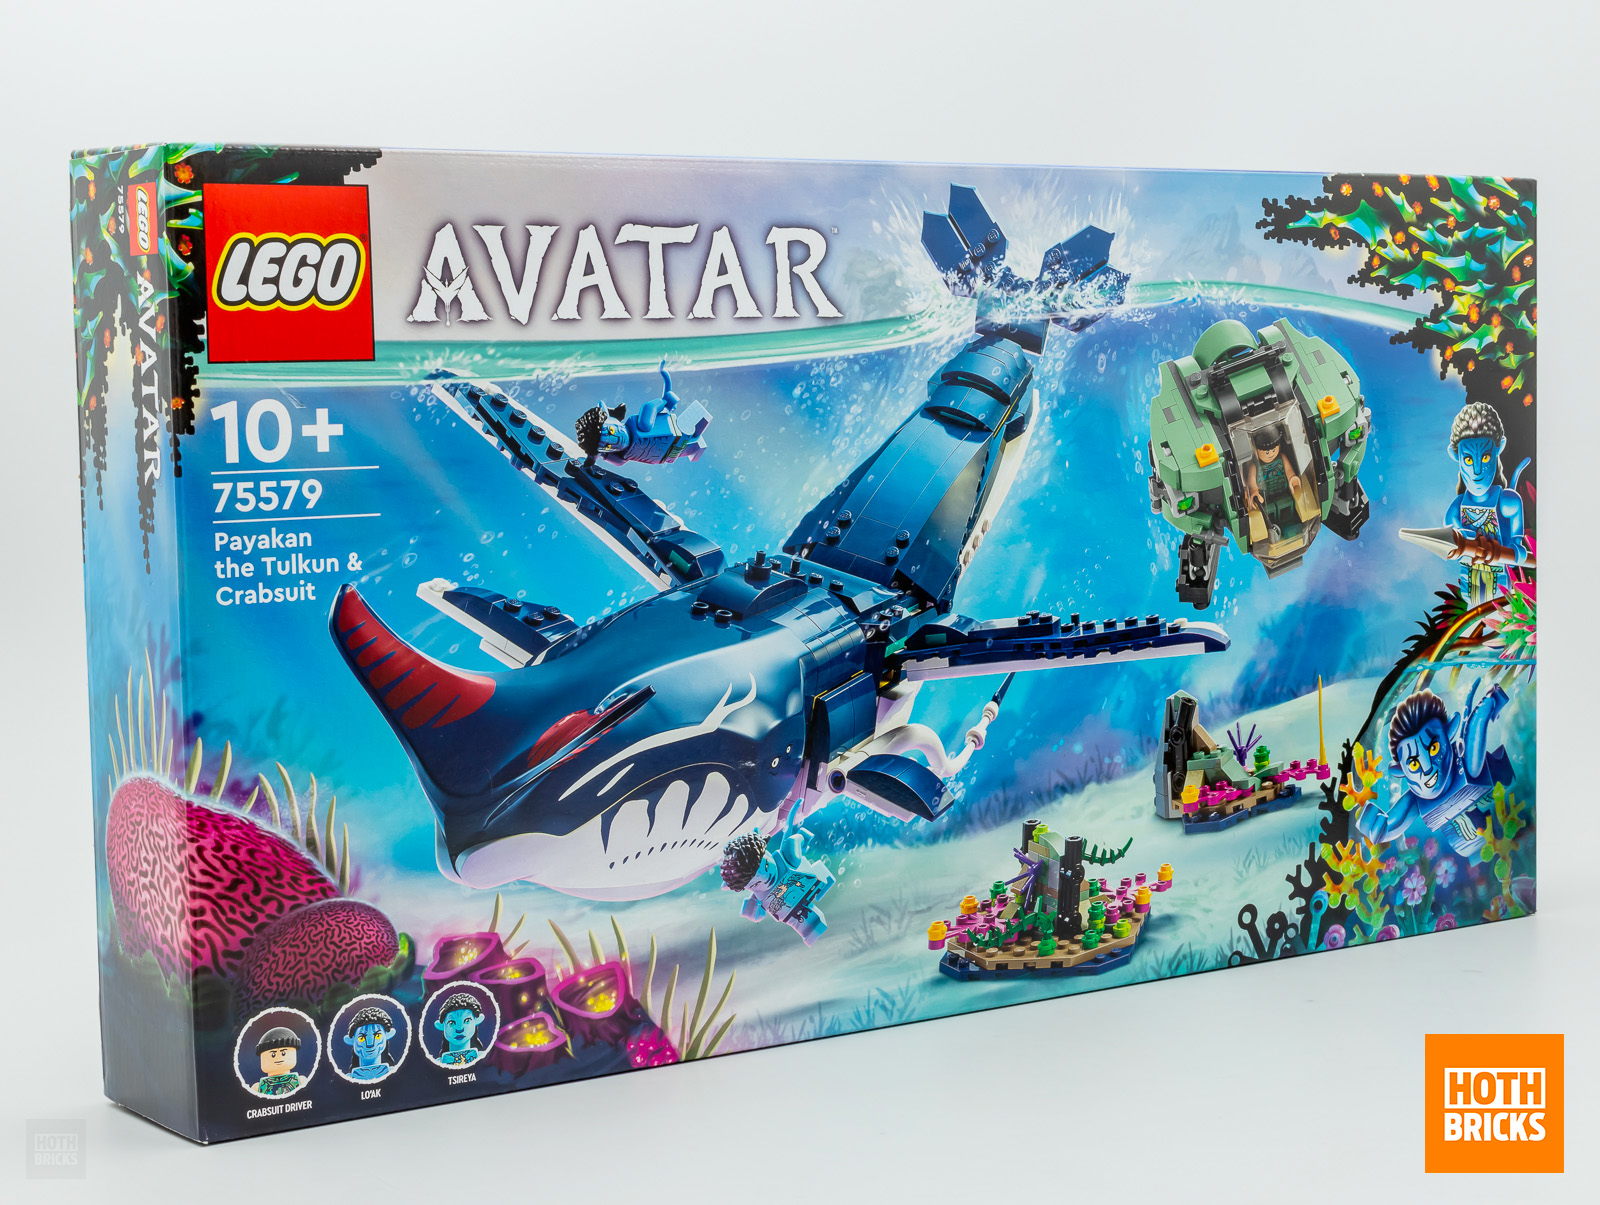 Tävling: en kopia av LEGO Avatar 75579 Payakan Tulkun & Crabsuit-setet ska vinnas!